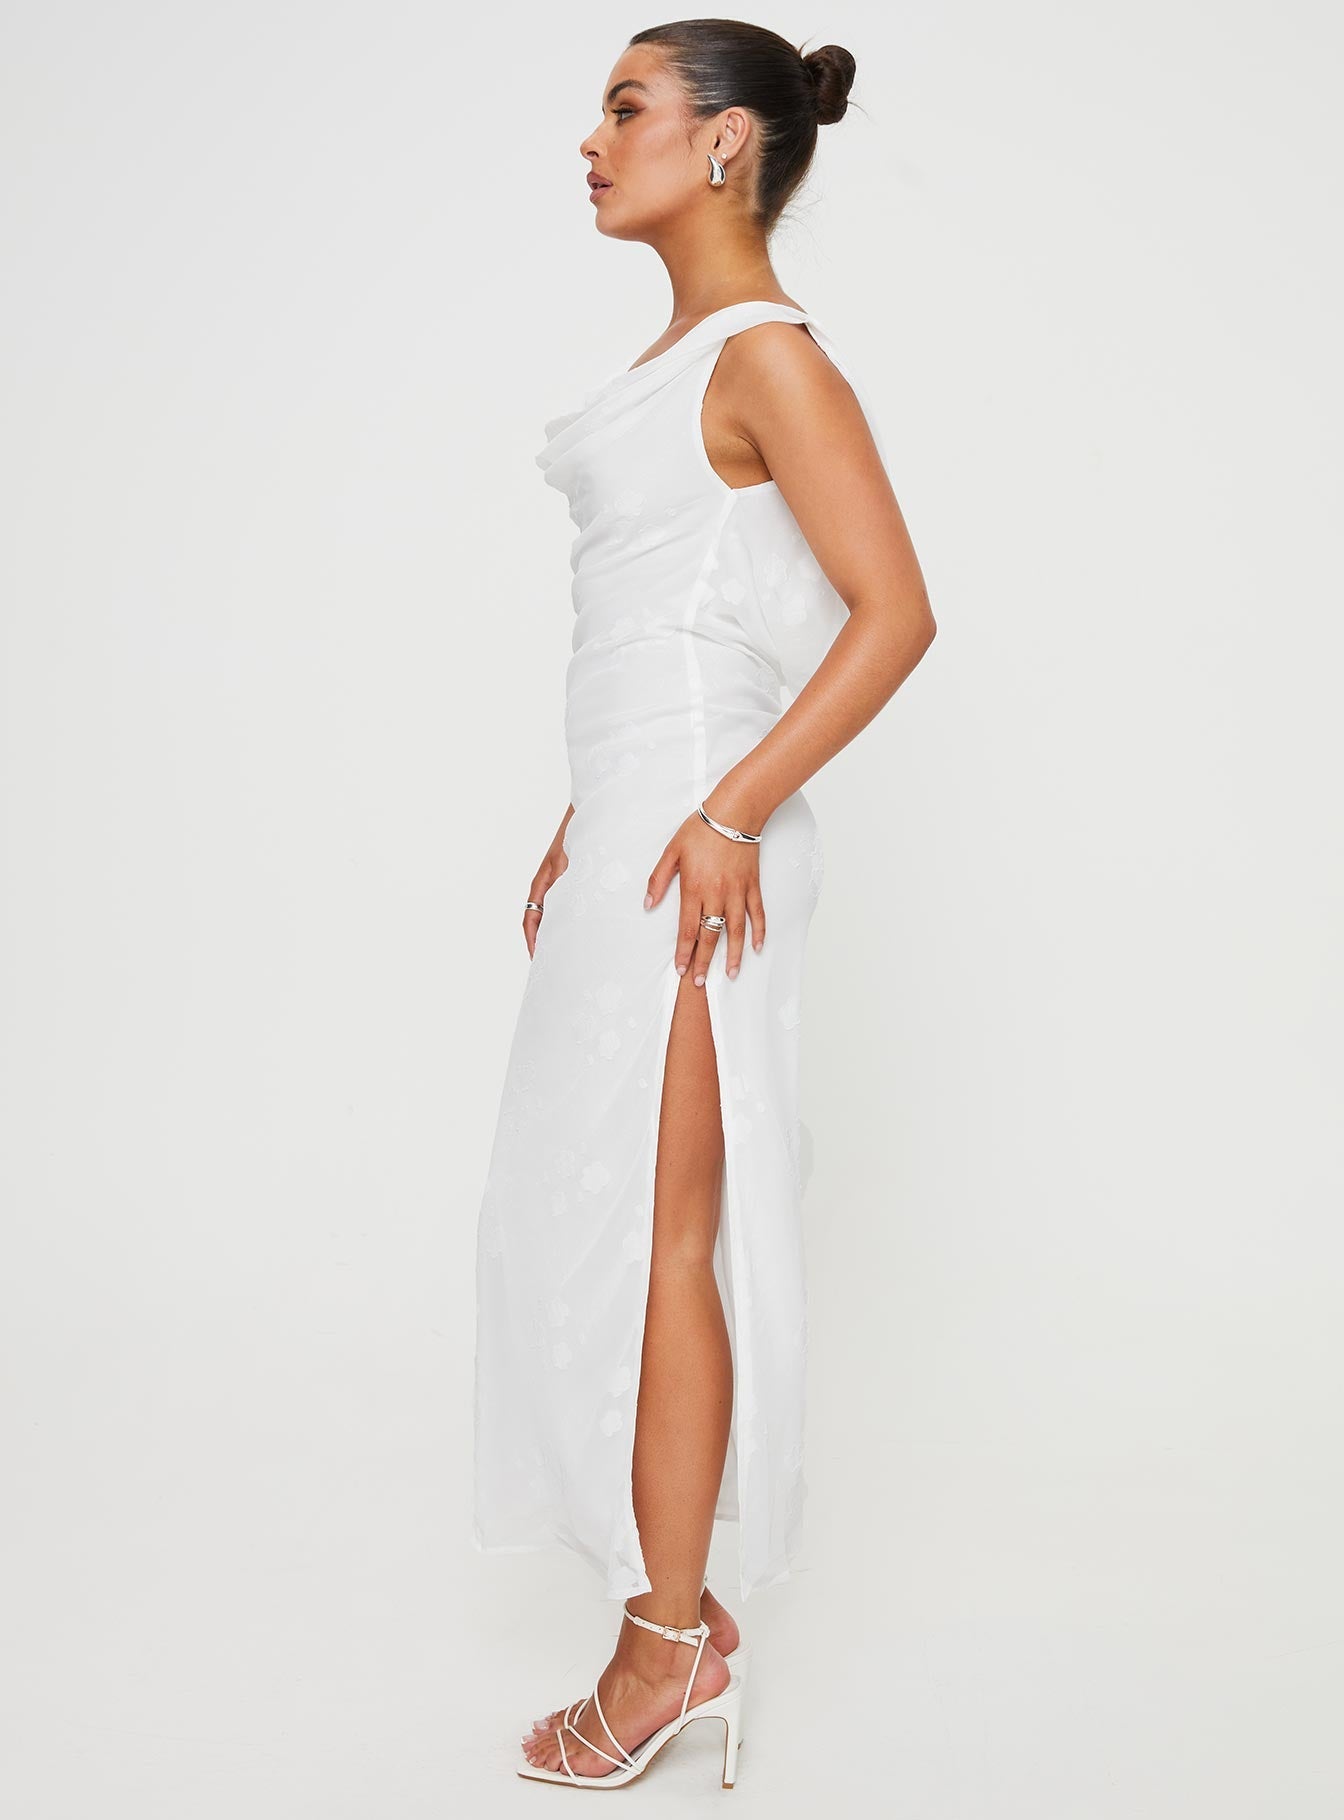 Shop Formal Dress - Contessa Maxi Dress White secondary image